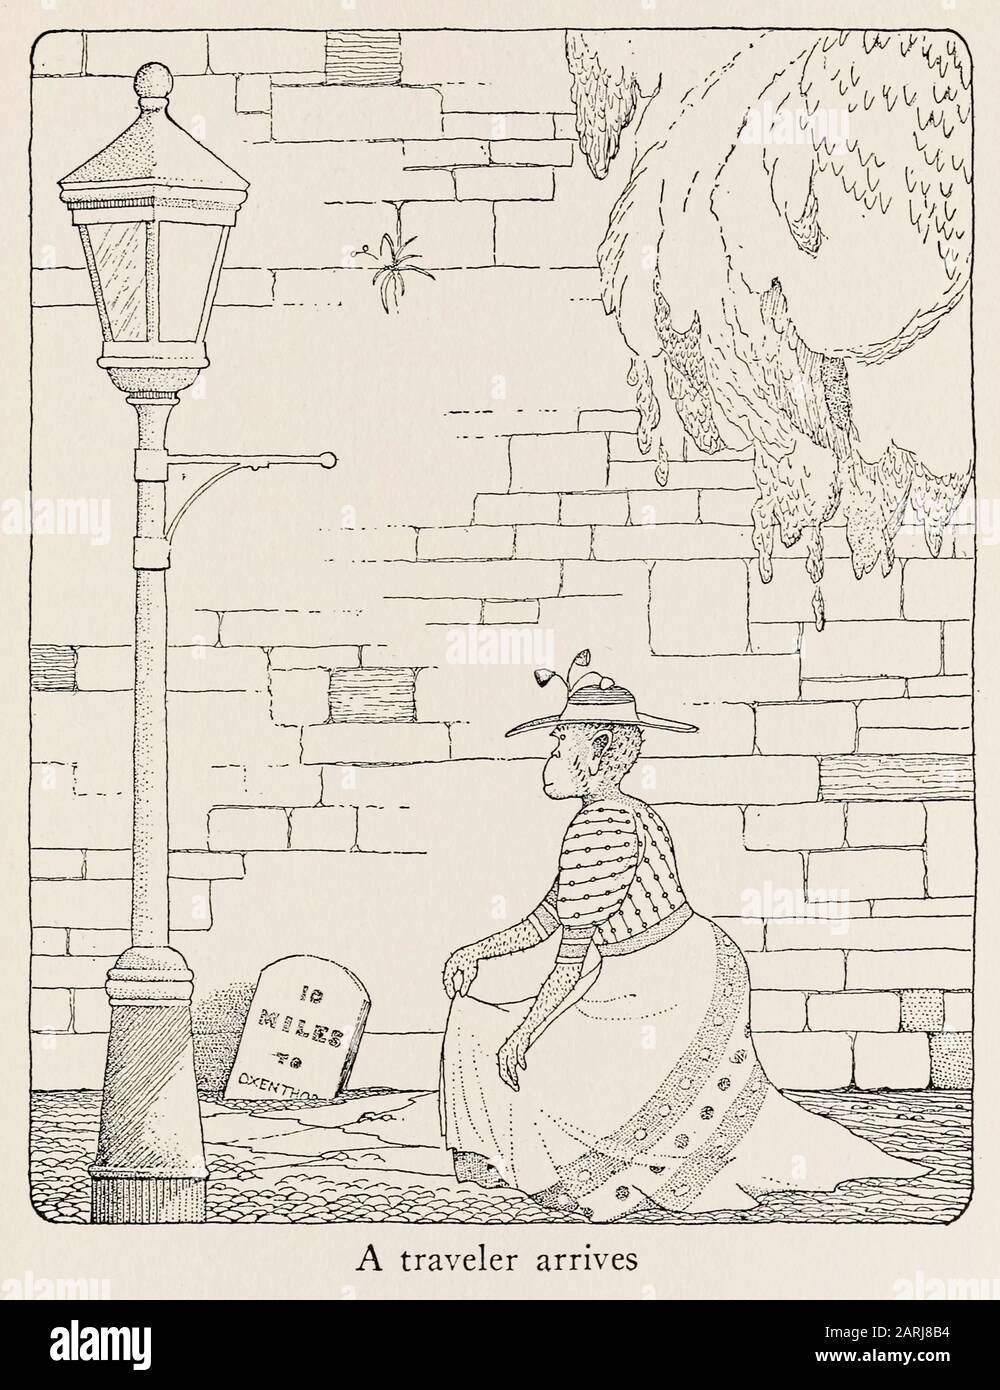 Illustration von The Voyages of Doctor Dolittle (1922), geschrieben und illustriert von Hugh Lofting (1886-1947). Der zweite Roman über einen Arzt, der mit Tieren sprechen kann. Weitere Informationen finden Sie weiter unten. Stockfoto